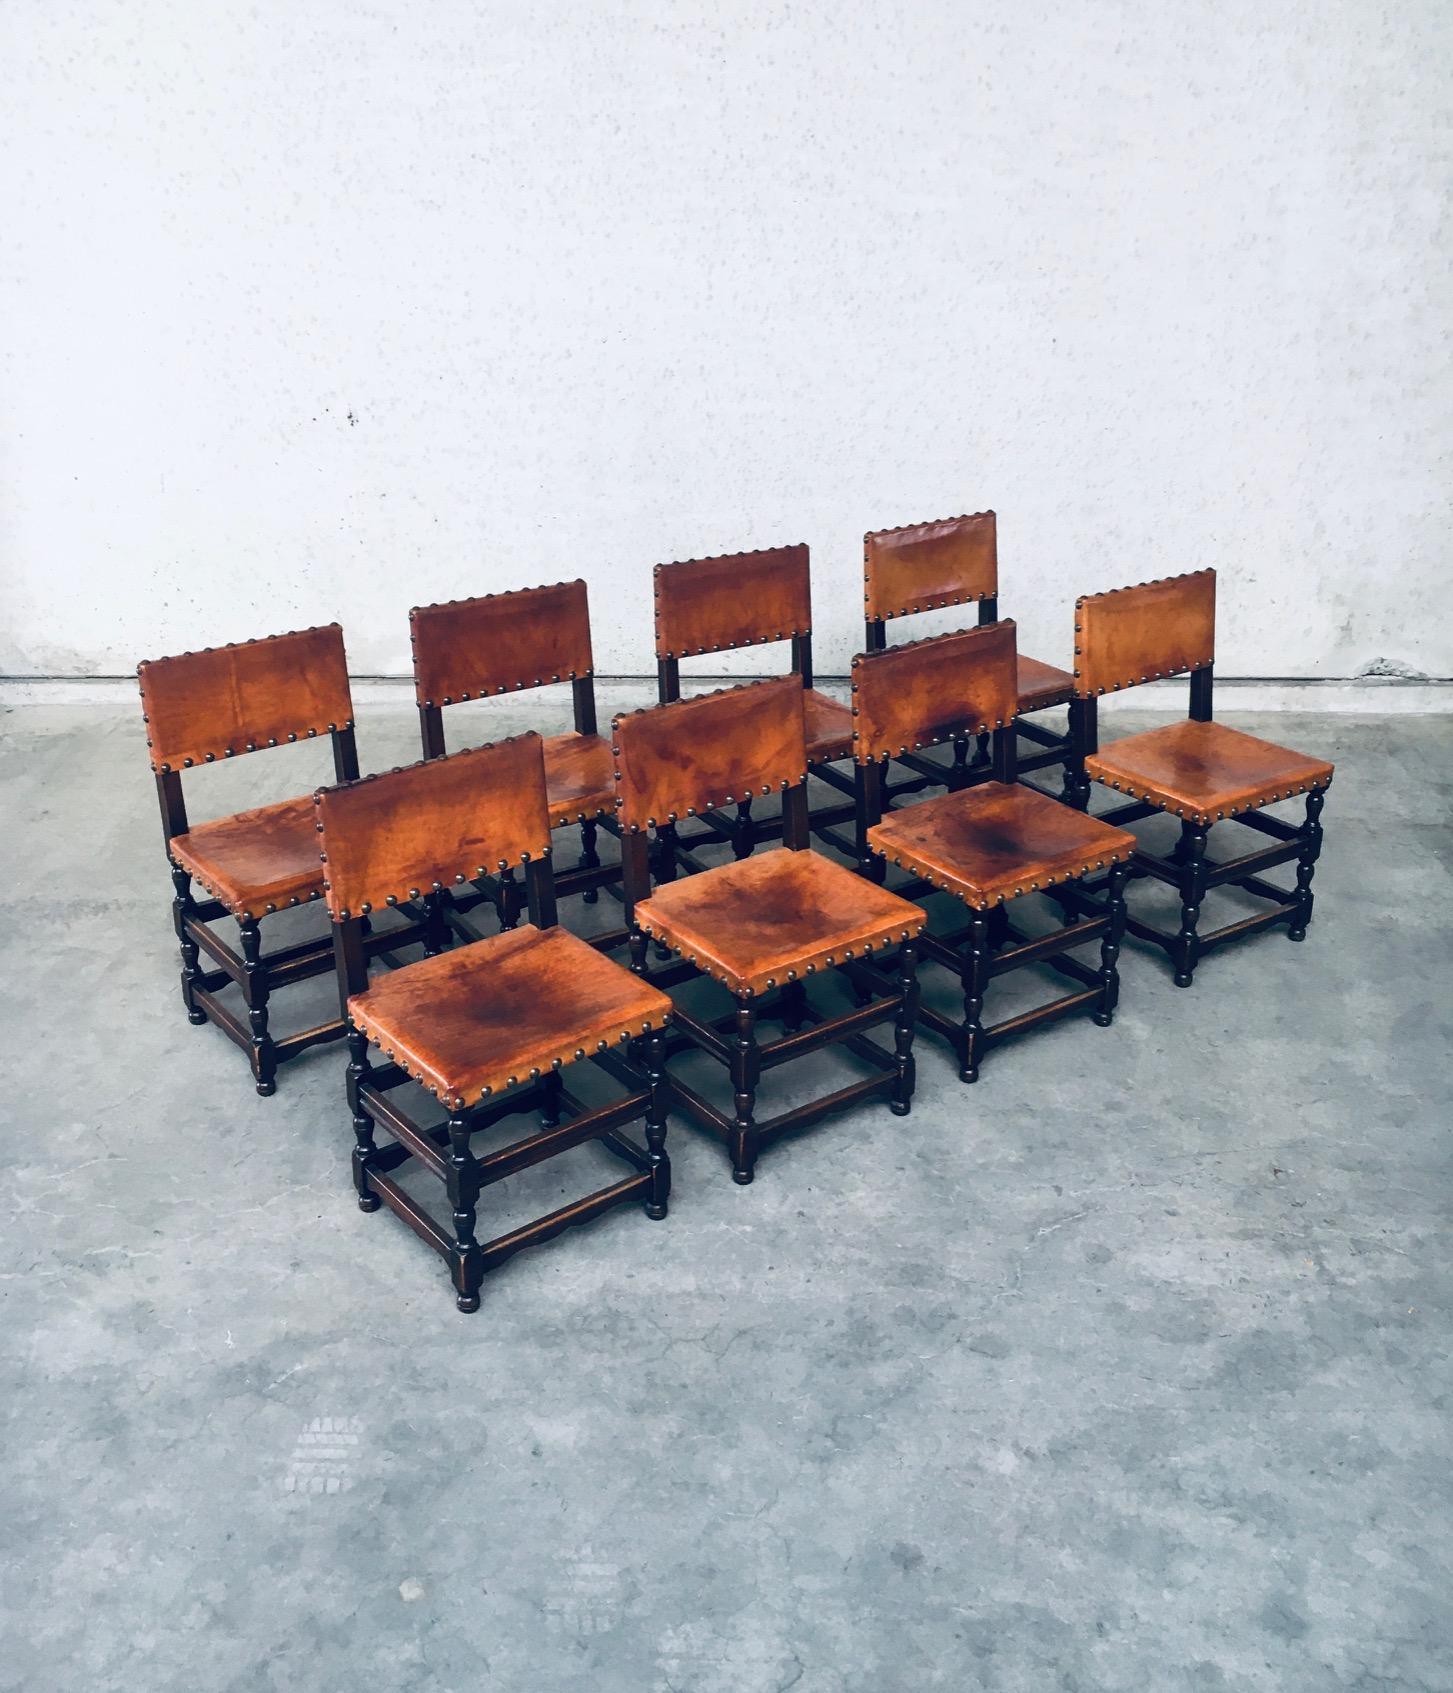 Vintage Tudor Style Cromwelian Design Style Leather Dining Chair set of 8. Made in England, 1940's. Structure en chêne teinté foncé avec assise et dossier en cuir naturel cognac épais, finition avec clous en laiton. Toutes les chaises sont joliment